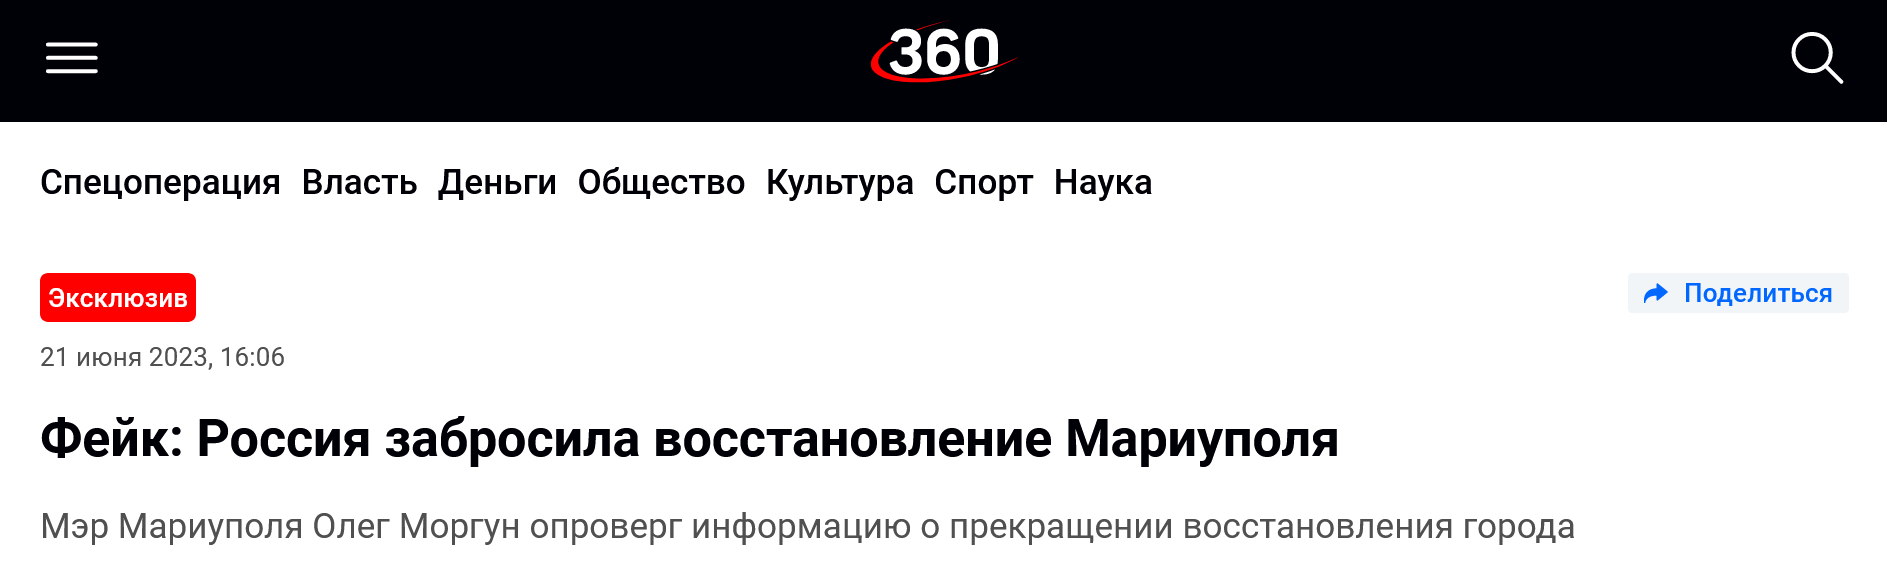 Screenshot 2023 06 22 At 11 46 06 Fejk Rossiya Zabrosila Vosstanovlenie Mariupolya 360°